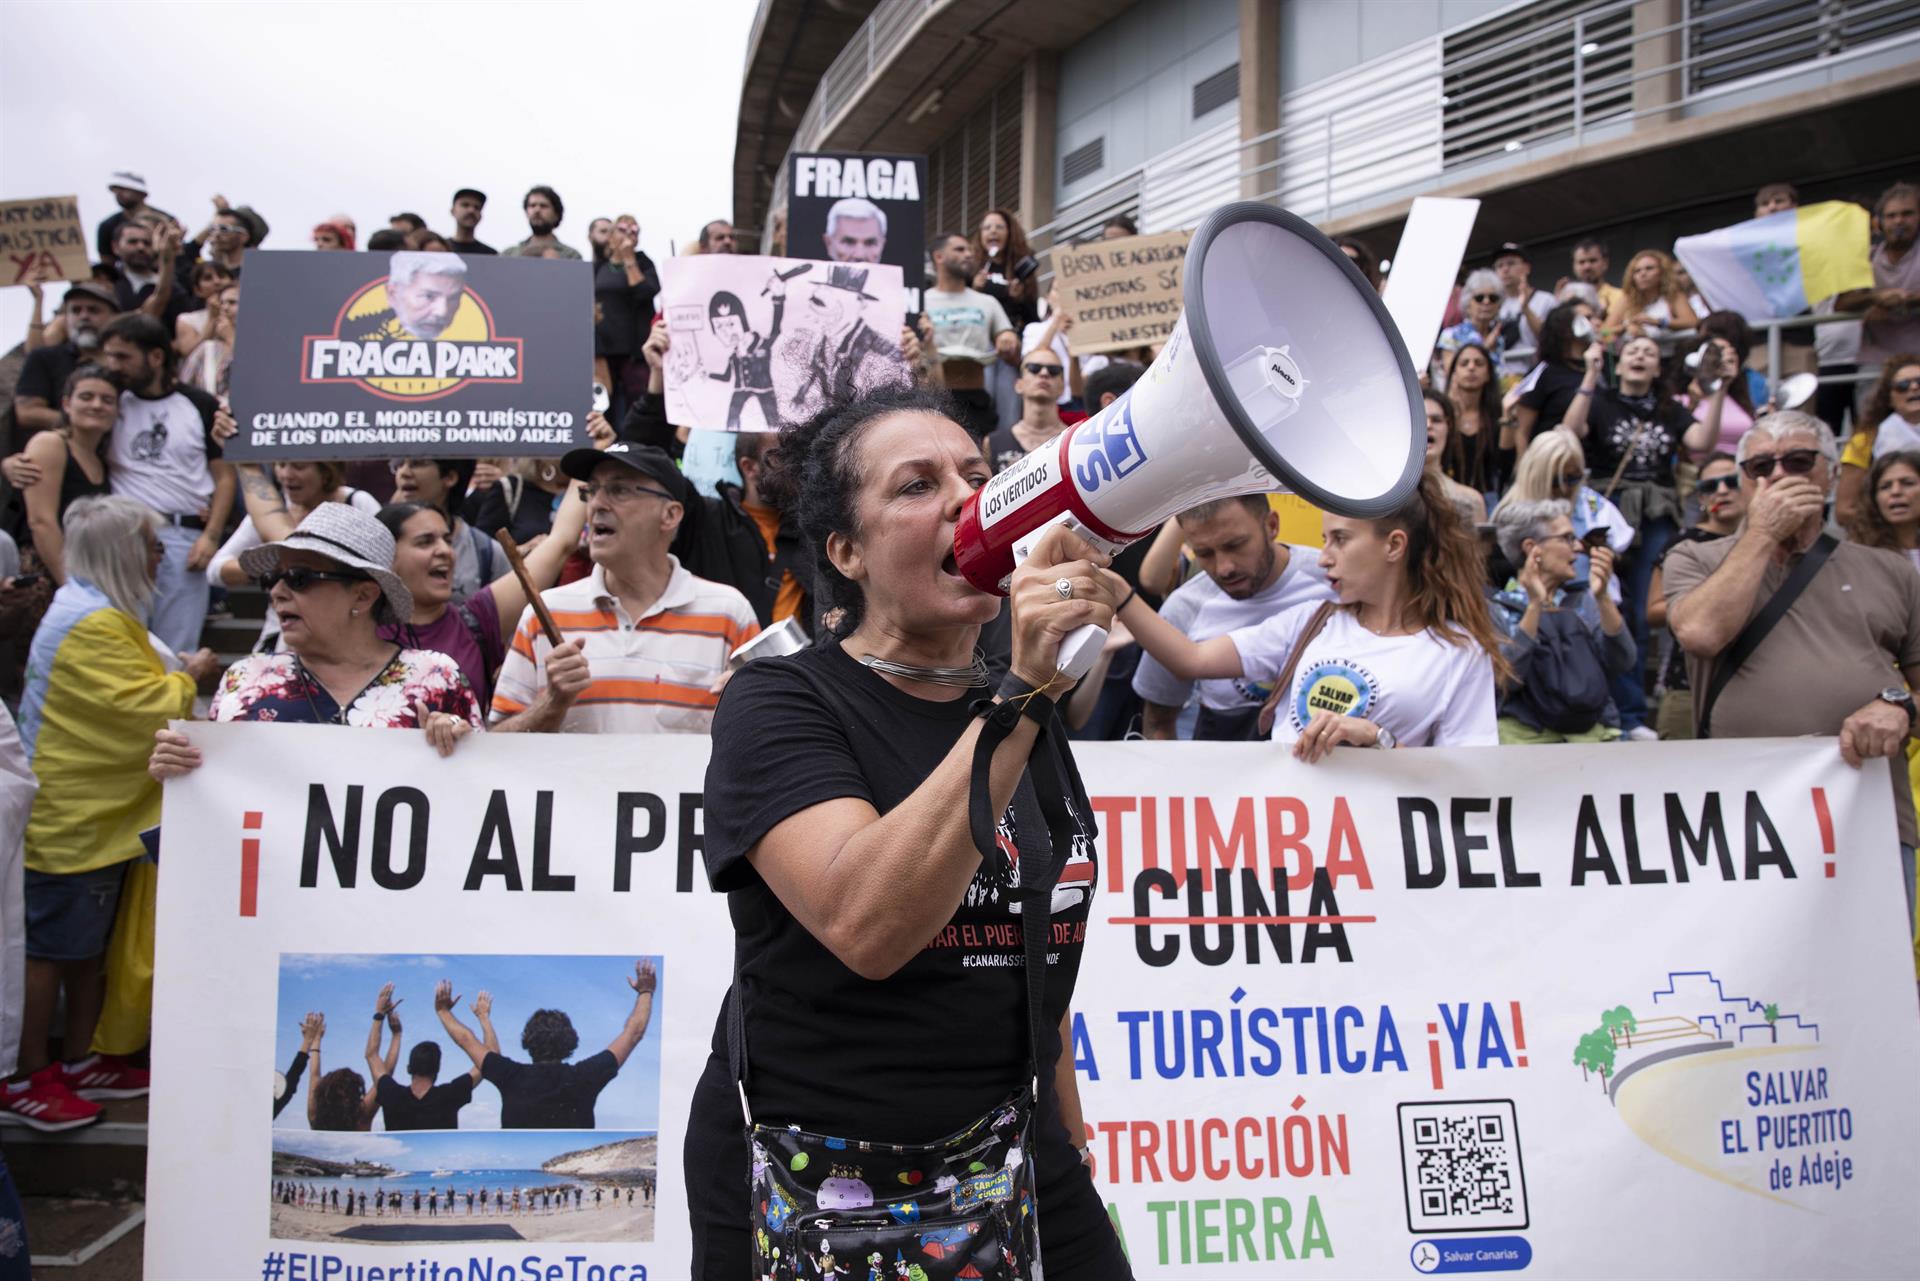 Foto de archivo de una manifestación en Santa Cruz de Tenerife contra la construcción del proyecto turístico Cuna del Alma en el Puertito de Adeje. EFE/Miguel Barreto